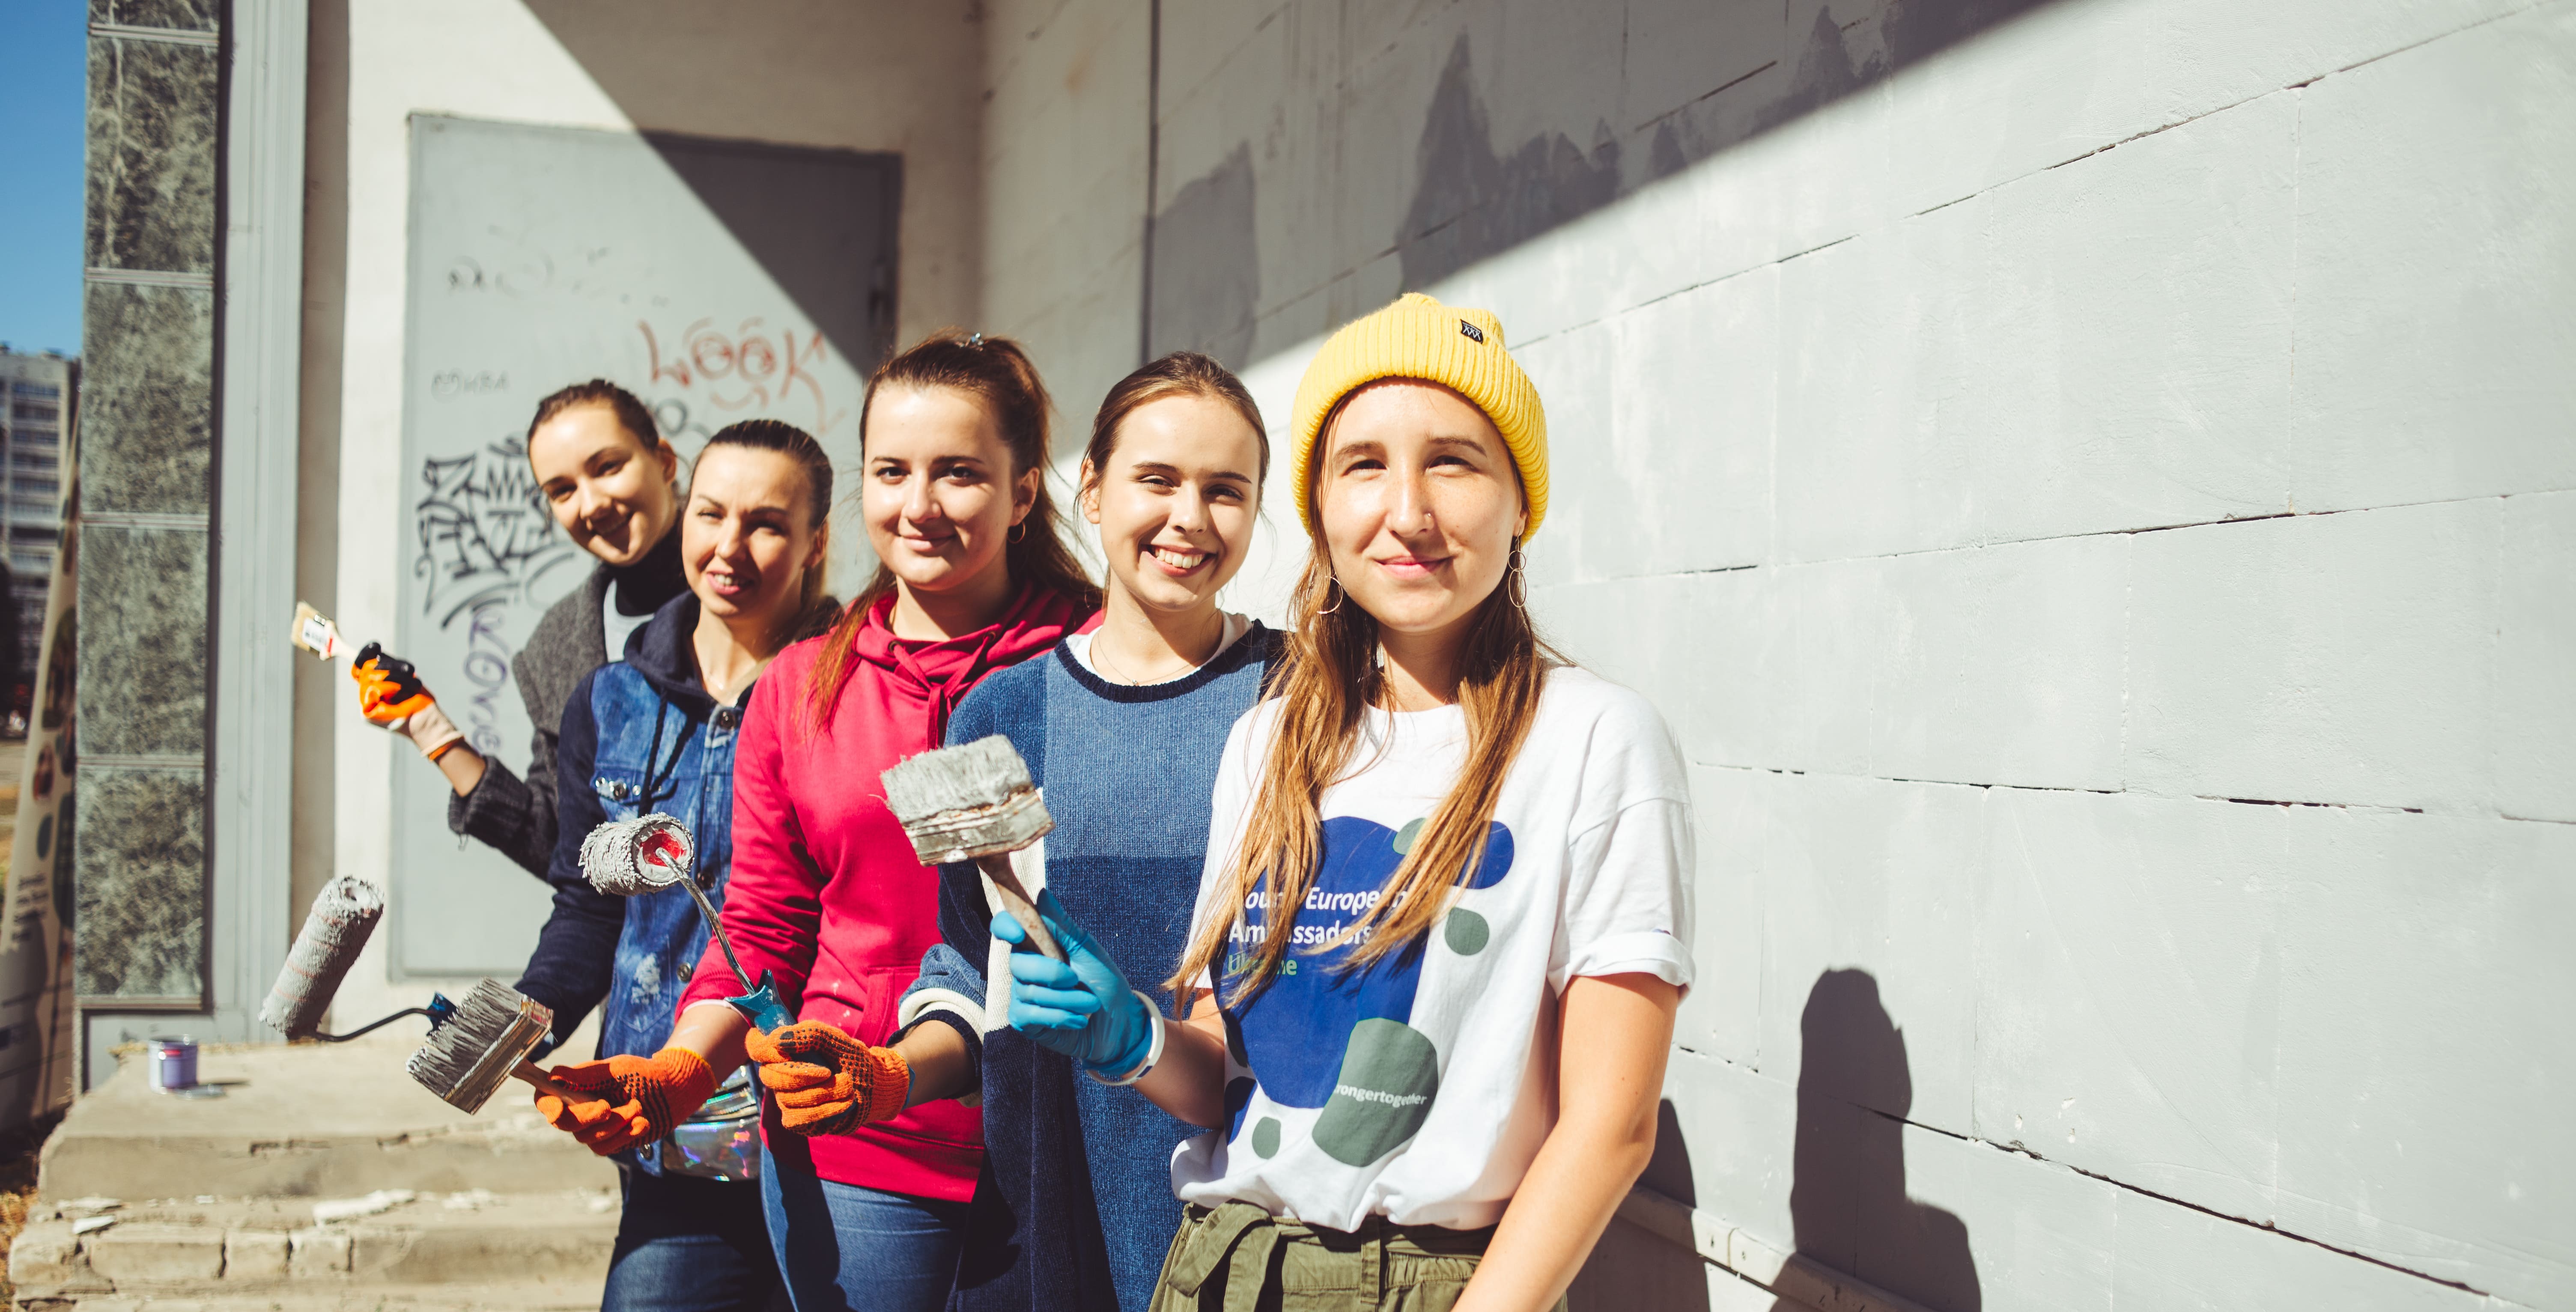 Будуємо Україну разом: як волонтери змінюють життя інших людей на краще Фото 4